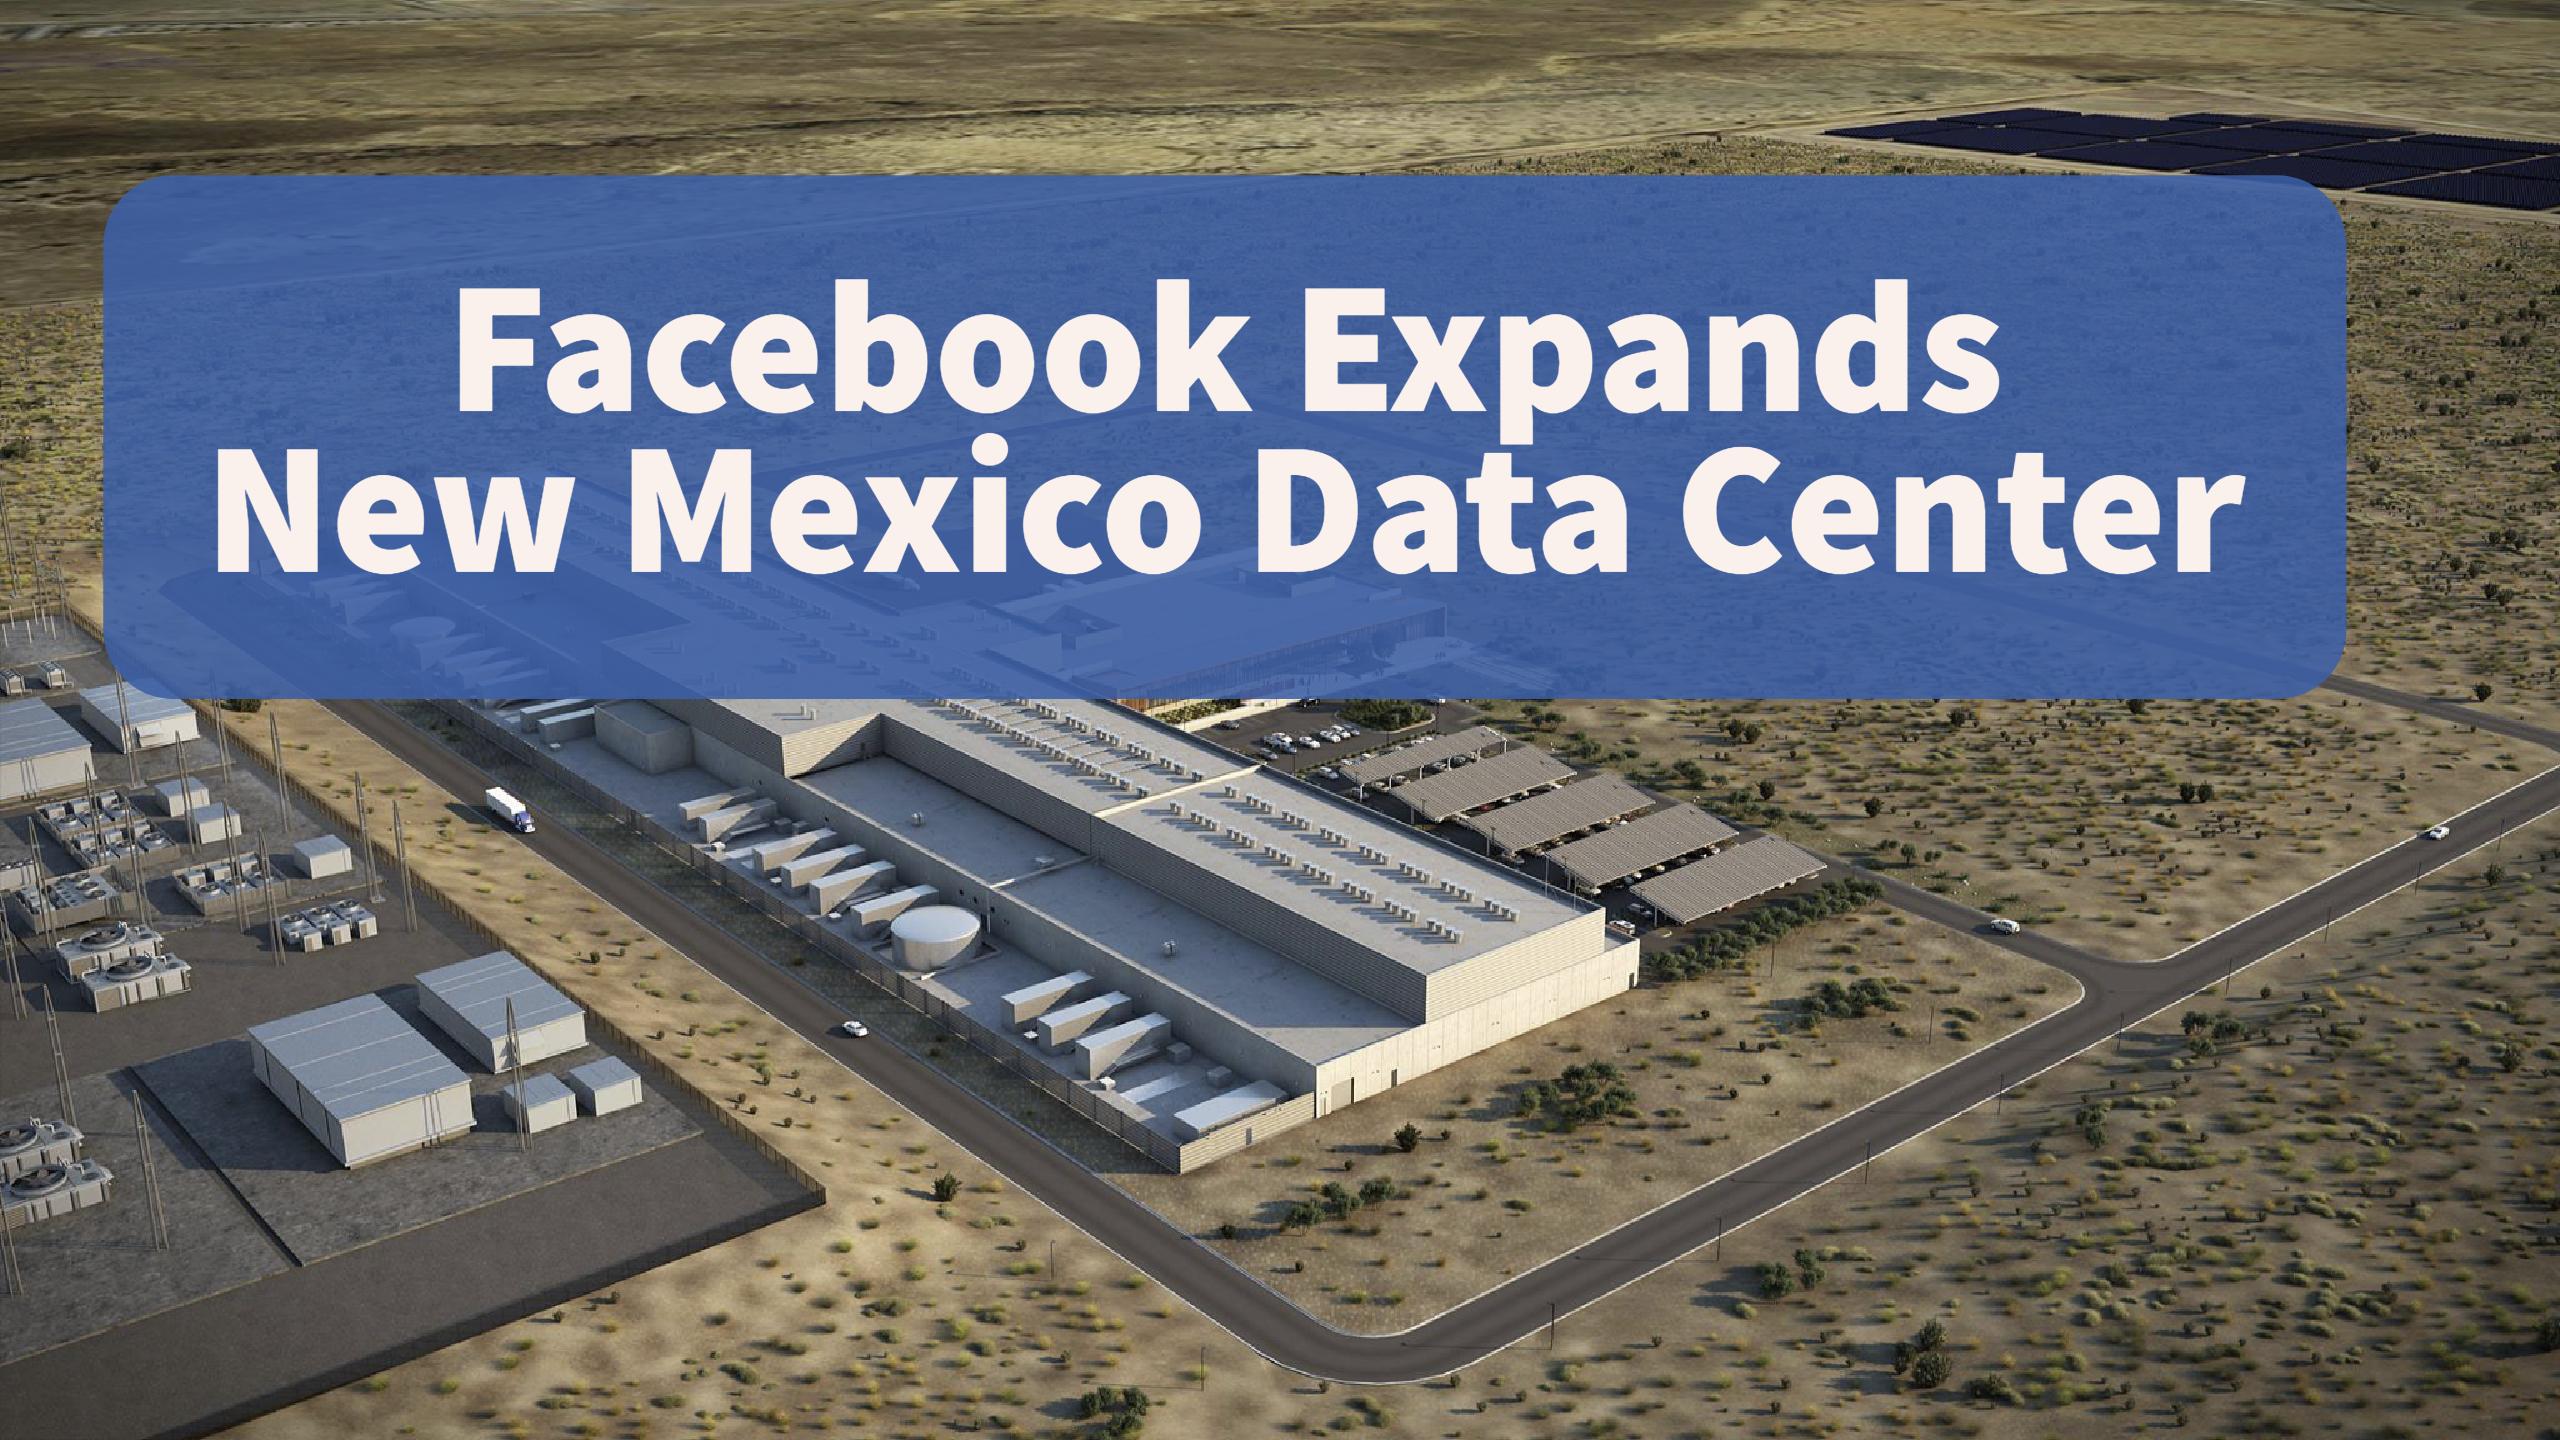 Facebook Expands New Mexico Data Center